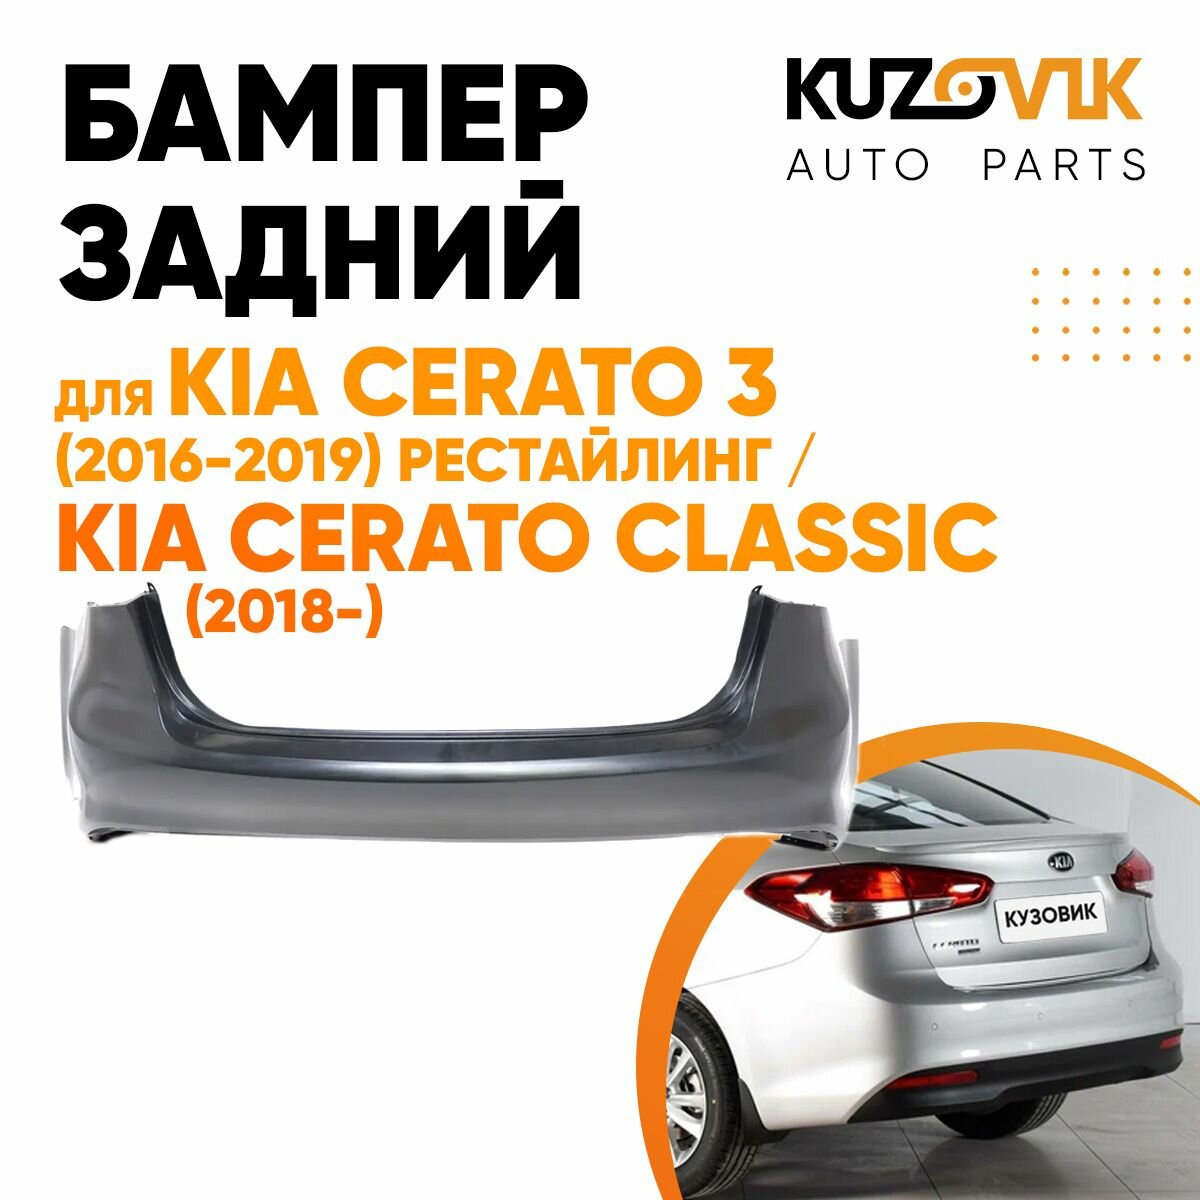 Бампер задний Kia Cerato 3 (2016-2019) рестайлинг / Kia Cerato Classic (2018-)